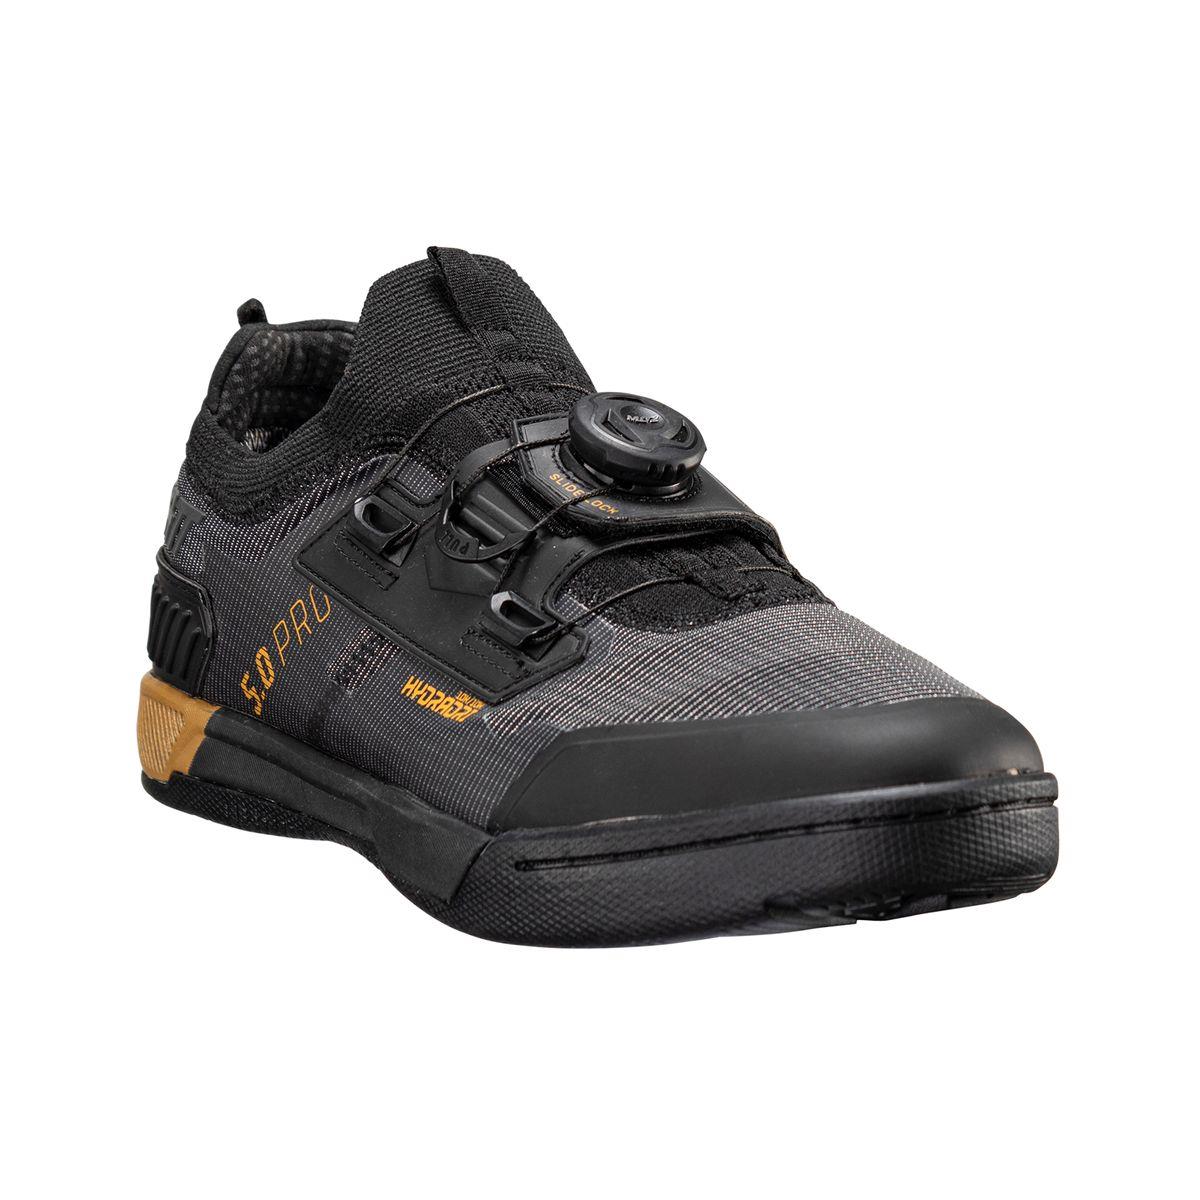 Chaussures VTT imperméables HydraDri ProClip 5.0 noir taille 38,5